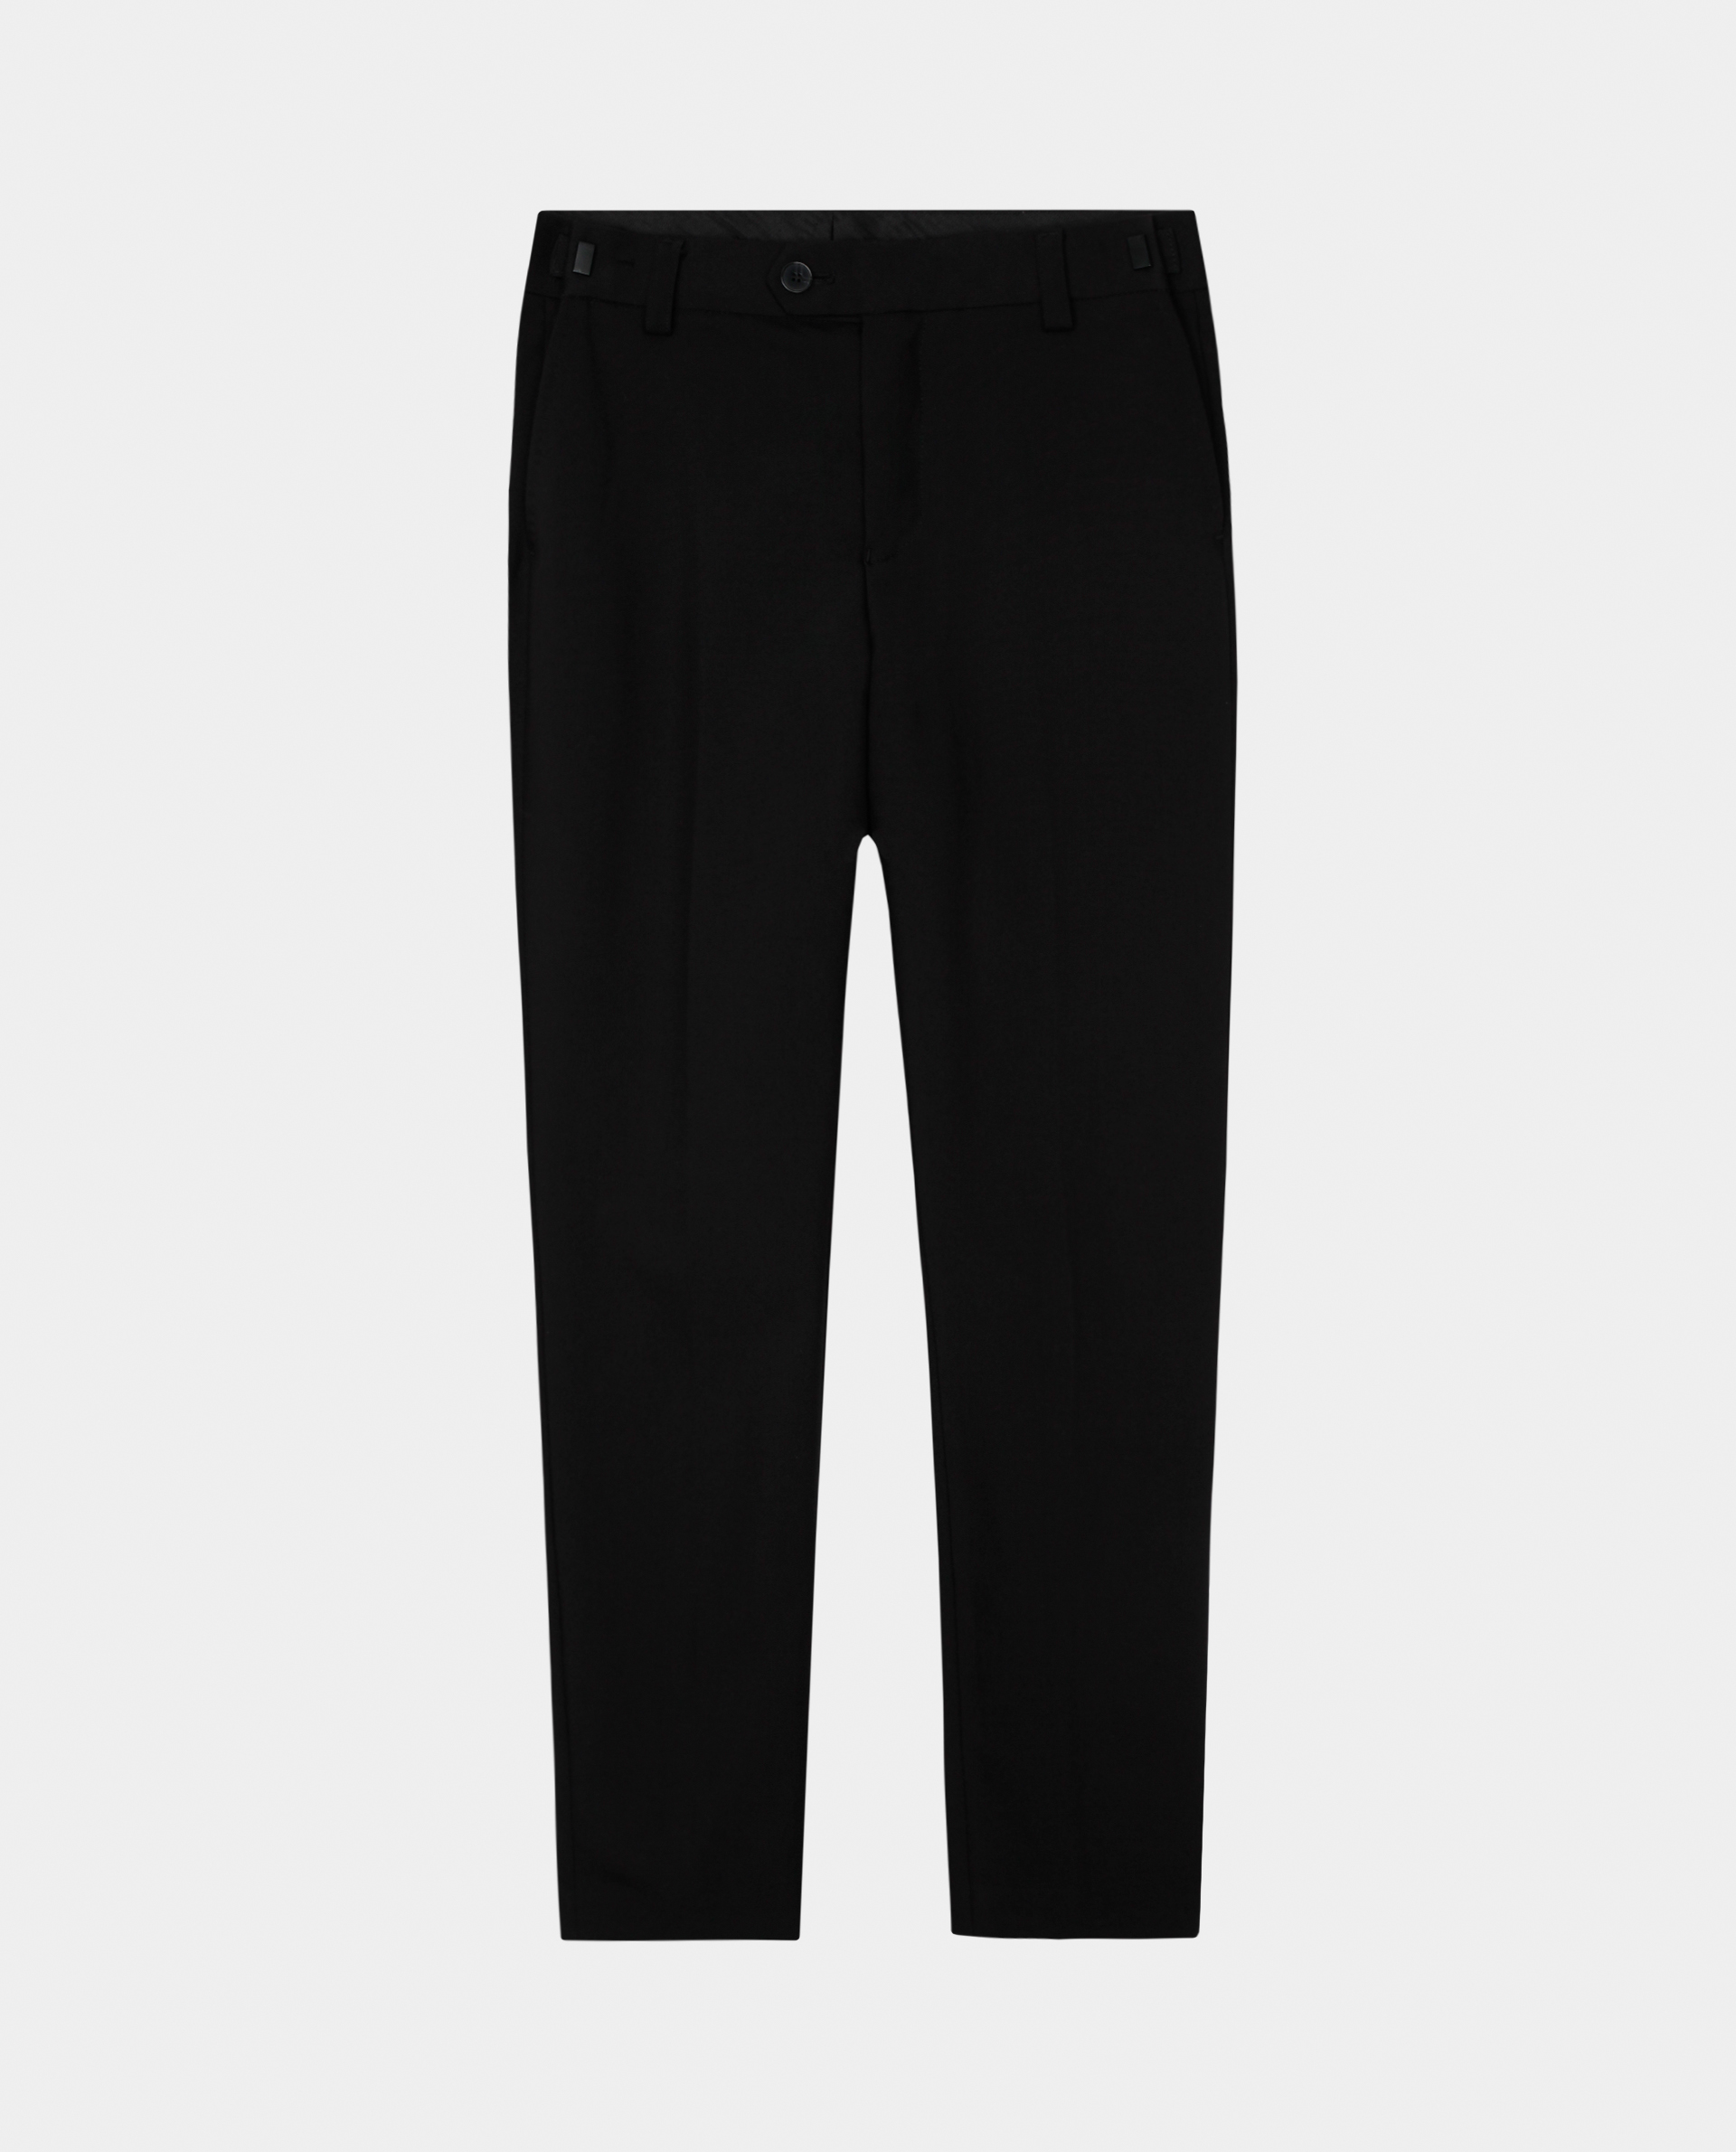 Черные узкие брюки Gulliver 220GSBC6304, размер 140, цвет черный slim / узкие - фото 3